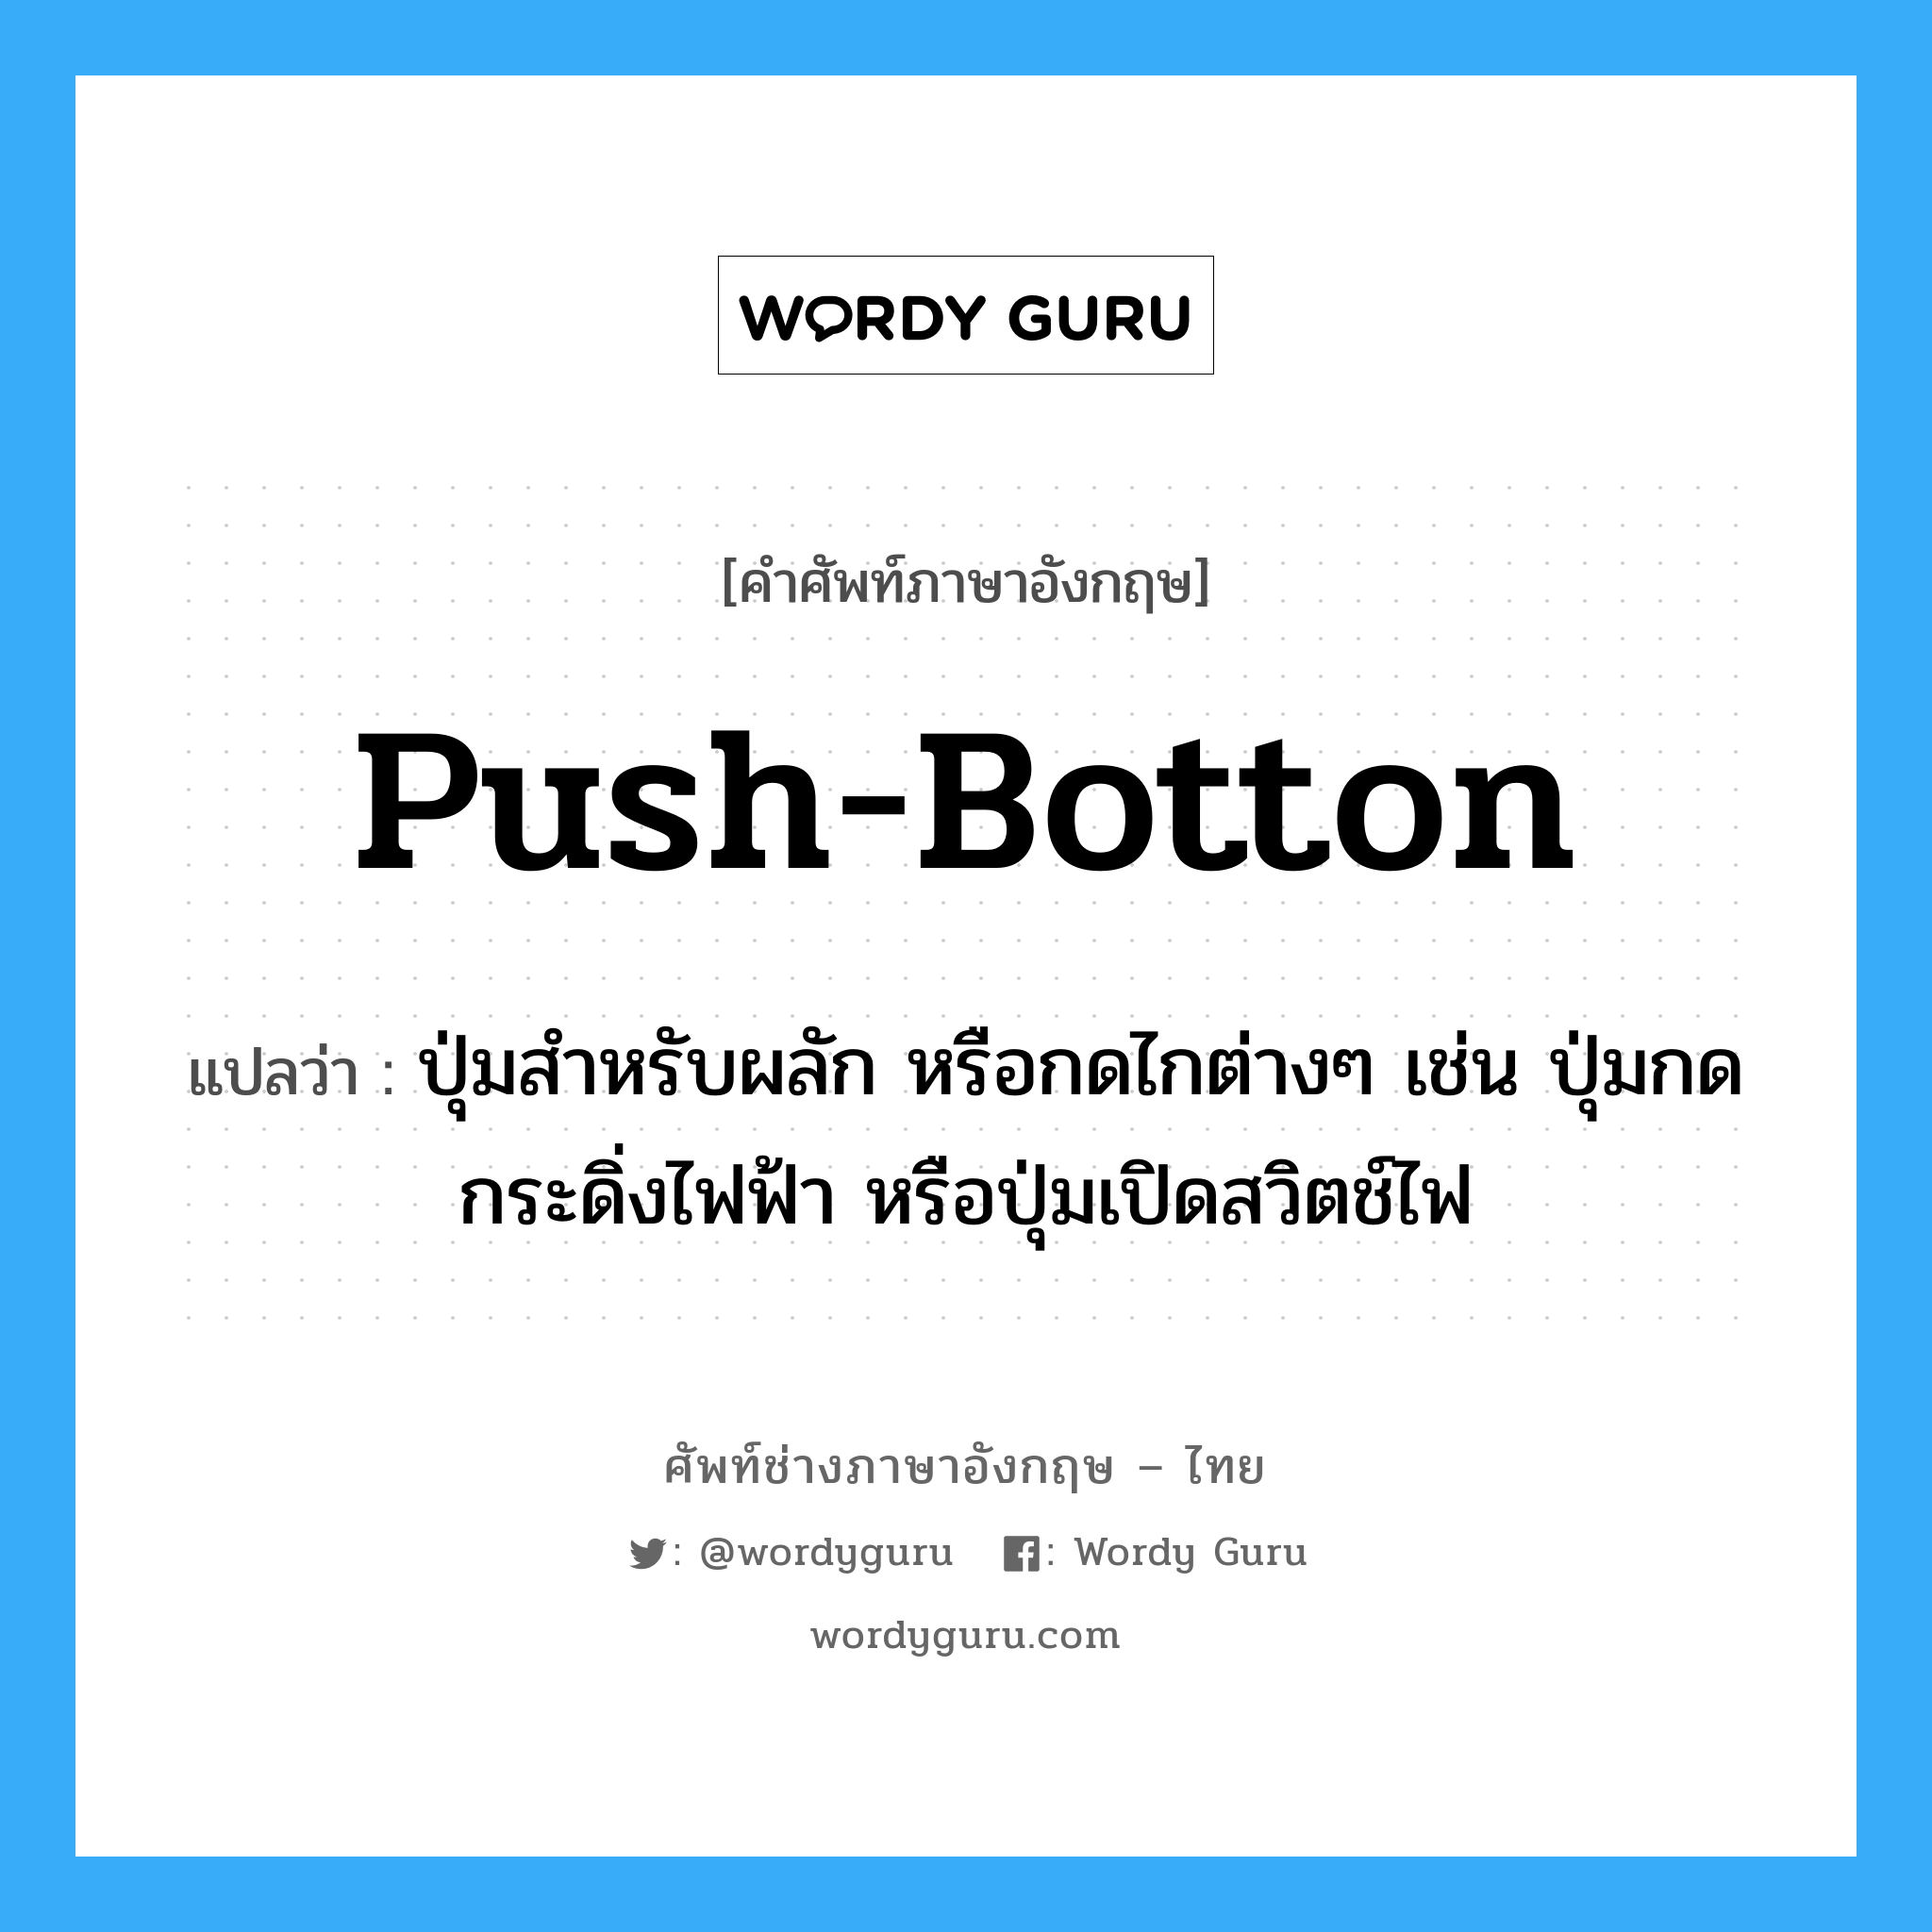 push-botton แปลว่า?, คำศัพท์ช่างภาษาอังกฤษ - ไทย push-botton คำศัพท์ภาษาอังกฤษ push-botton แปลว่า ปุ่มสำหรับผลัก หรือกดไกต่างๆ เช่น ปุ่มกดกระดิ่งไฟฟ้า หรือปุ่มเปิดสวิตช์ไฟ